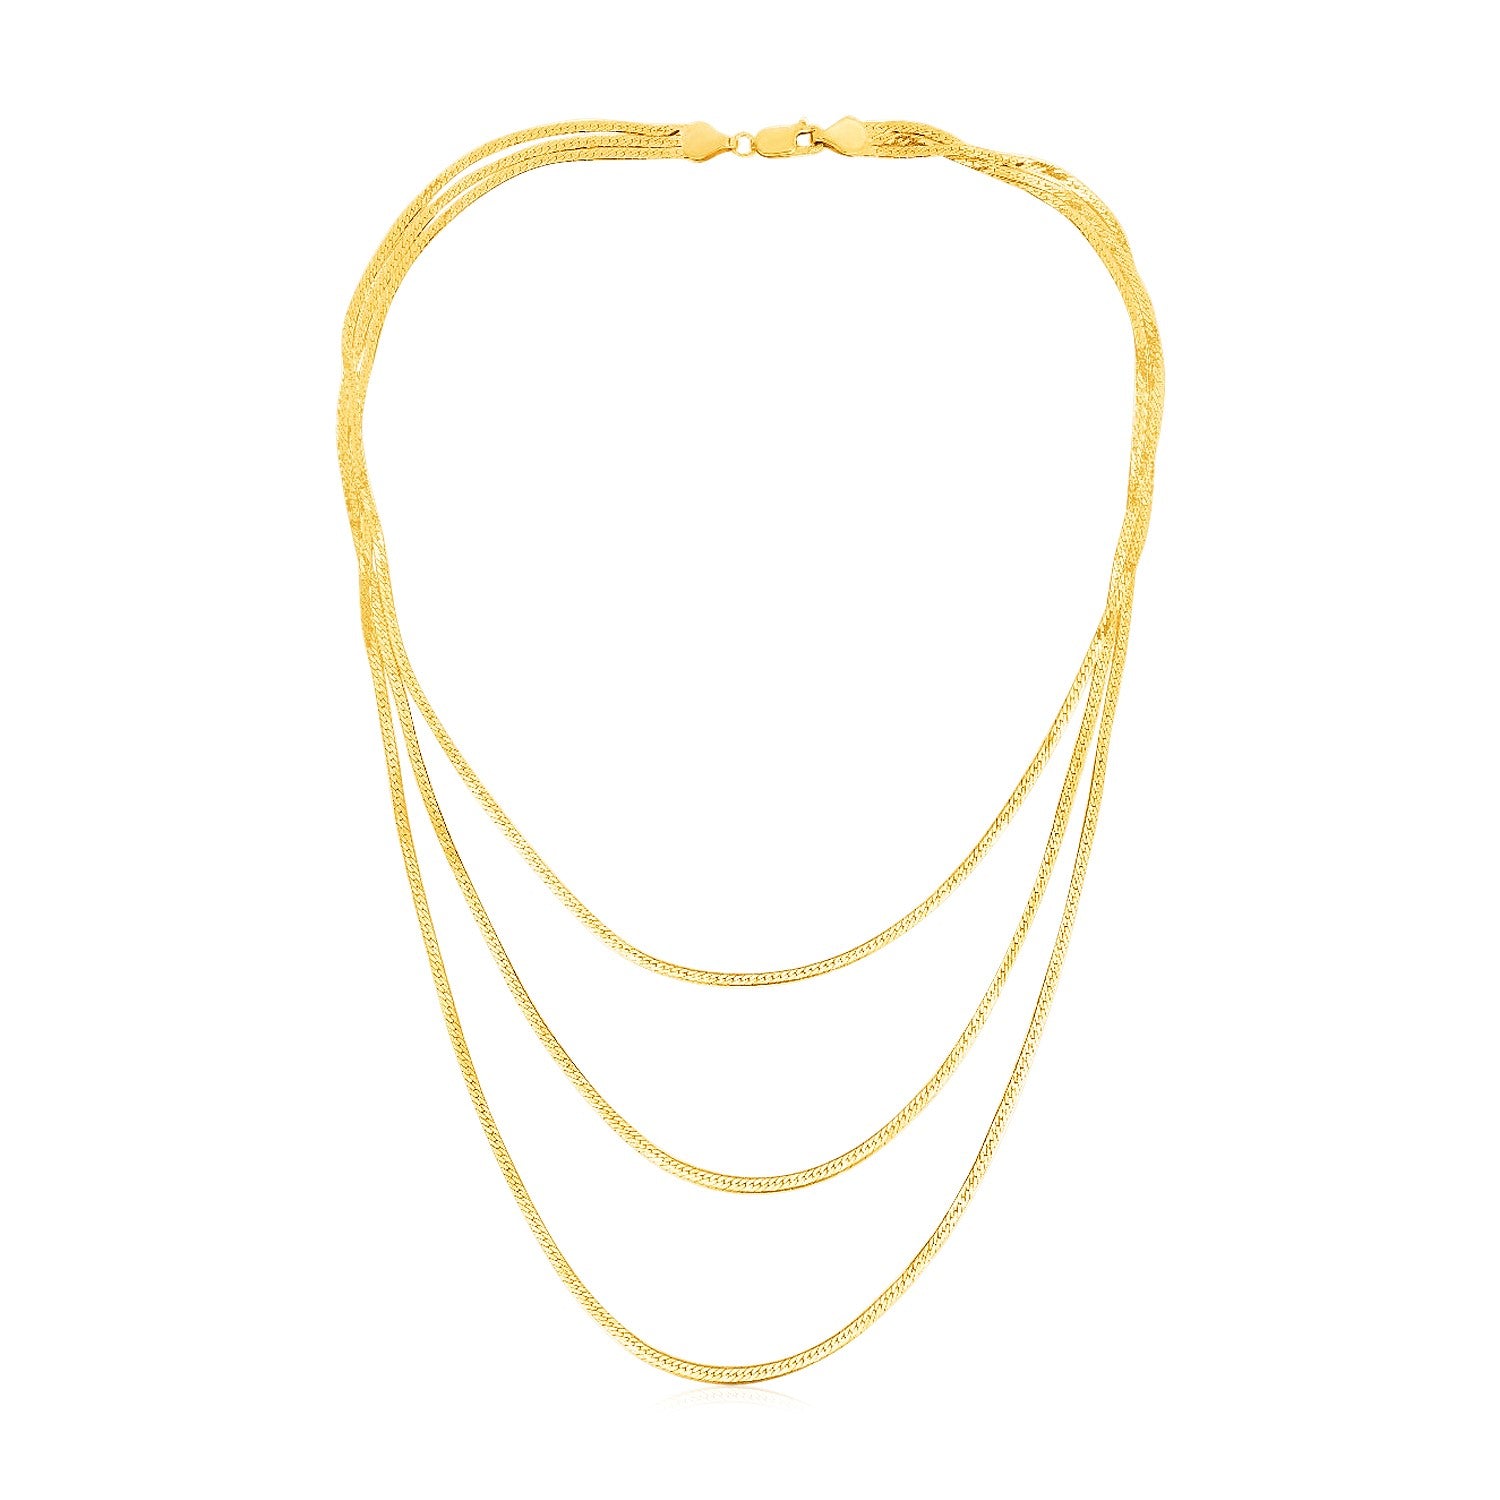 14k Yellow Gold Three Strand Herringbone Chain Necklace